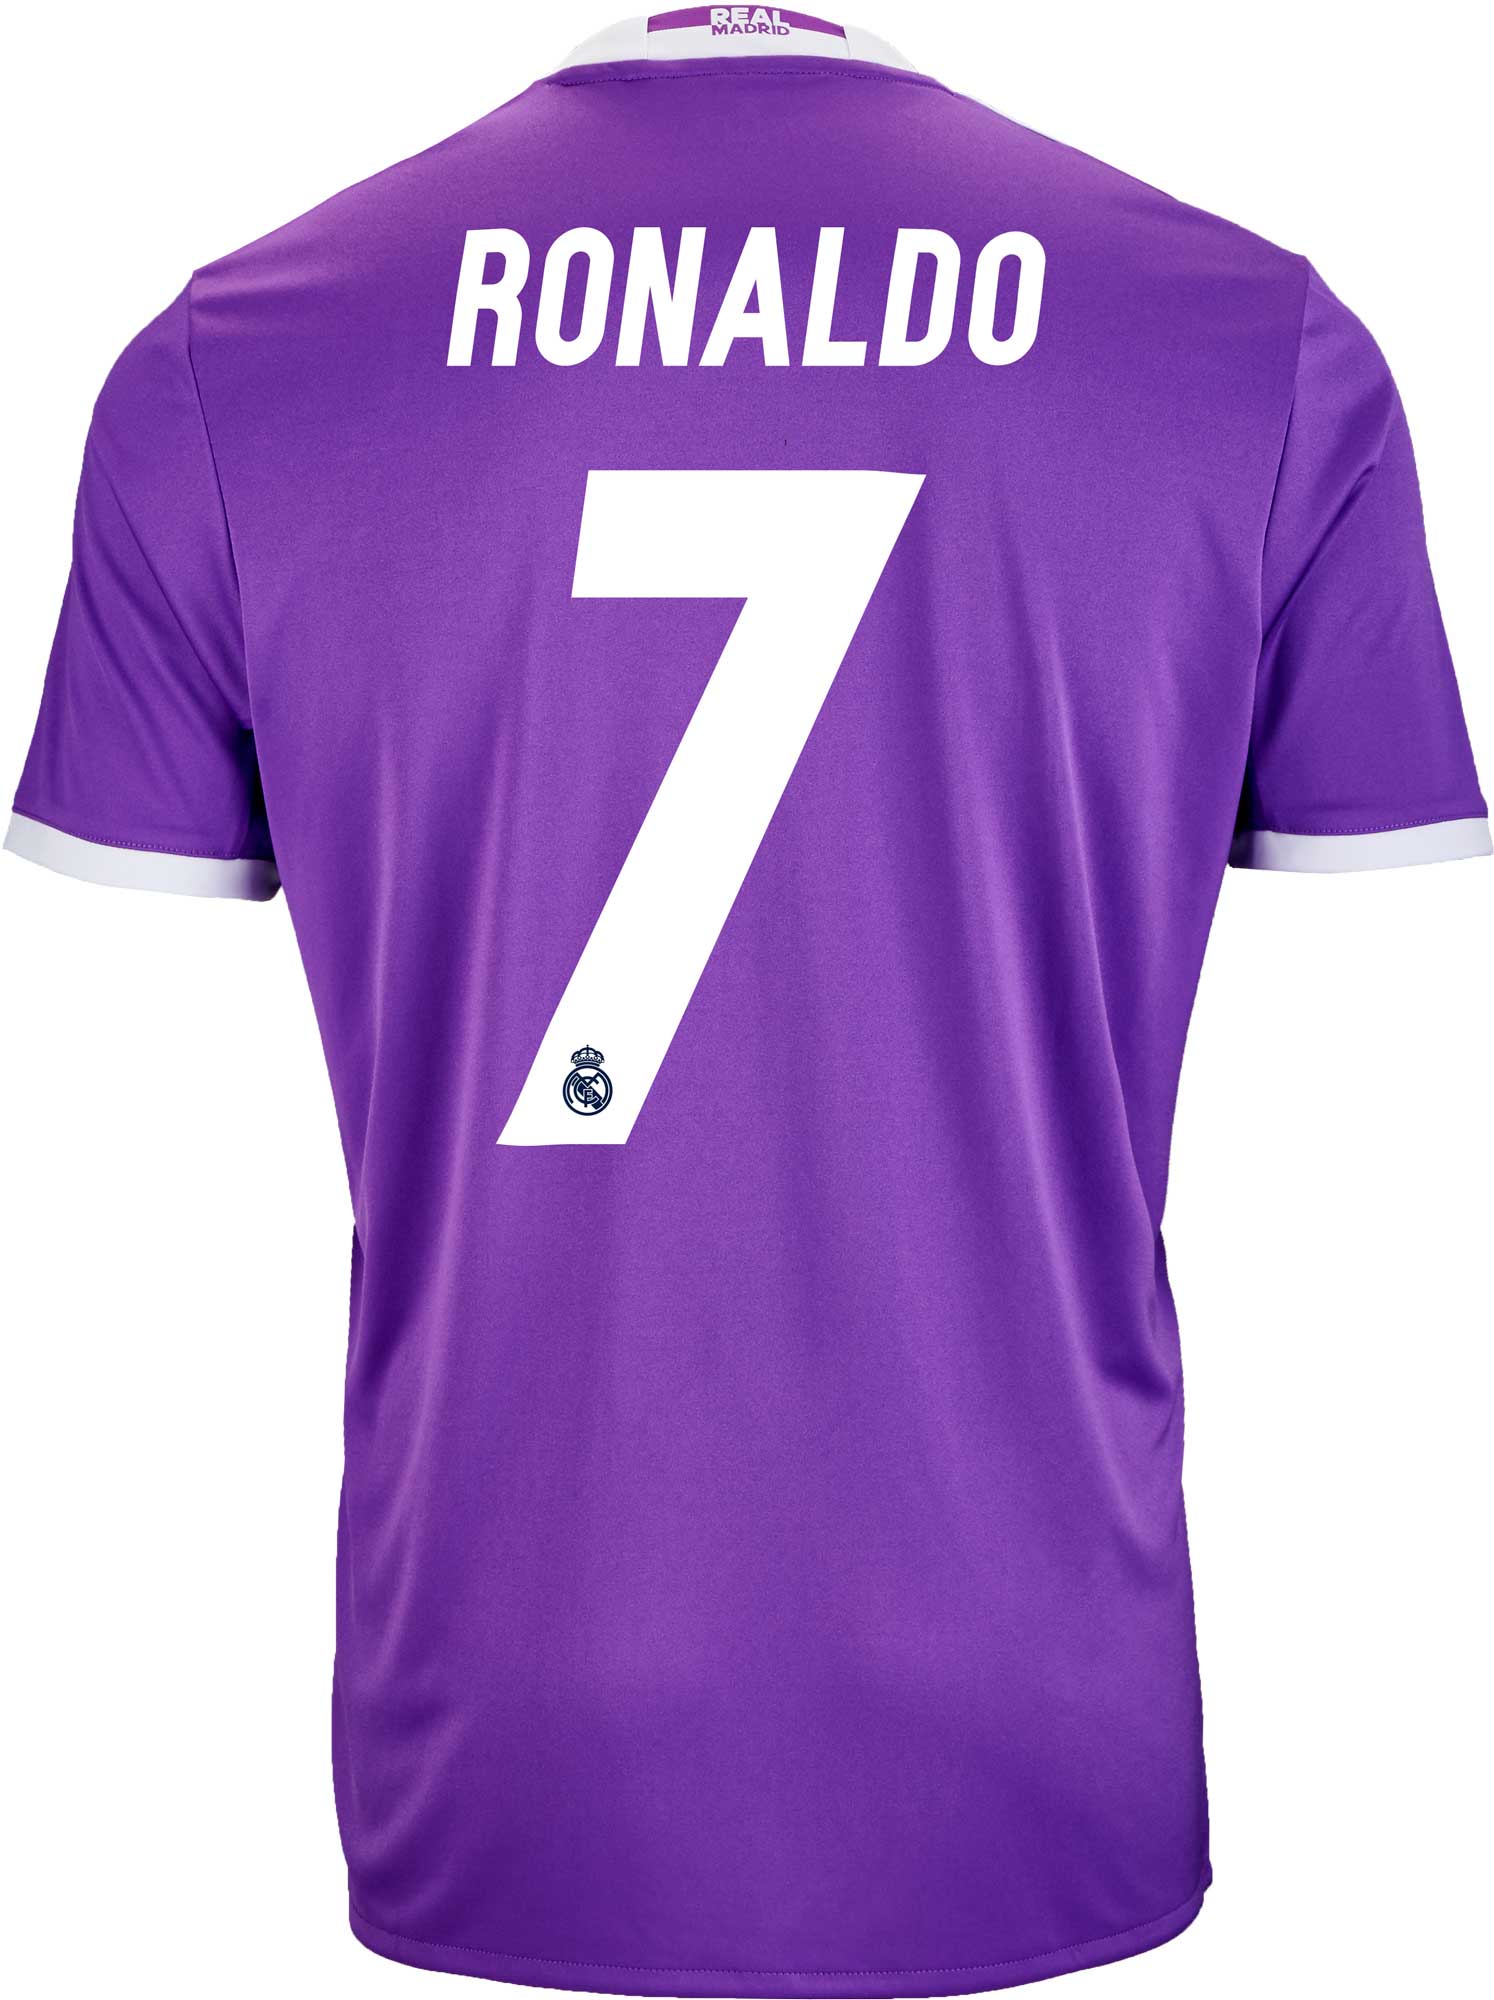 Rechtmatig Eigen Methode adidas Ronaldo Real Madrid Jersey - 2016 Real Madrid Jerseys